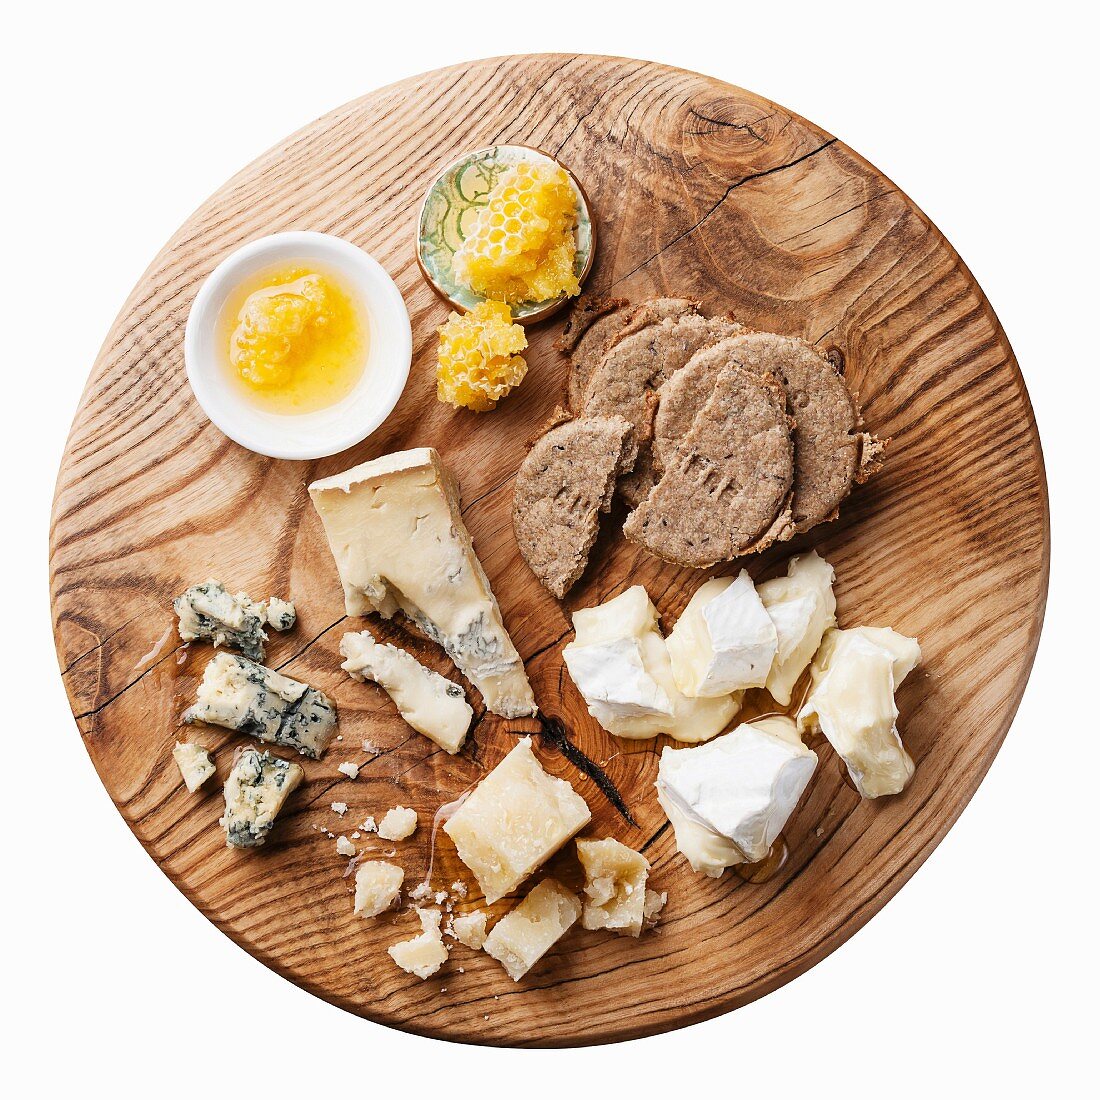 Vorspeisenplatte mit Käse, Honig und Crackern (Aufsicht)